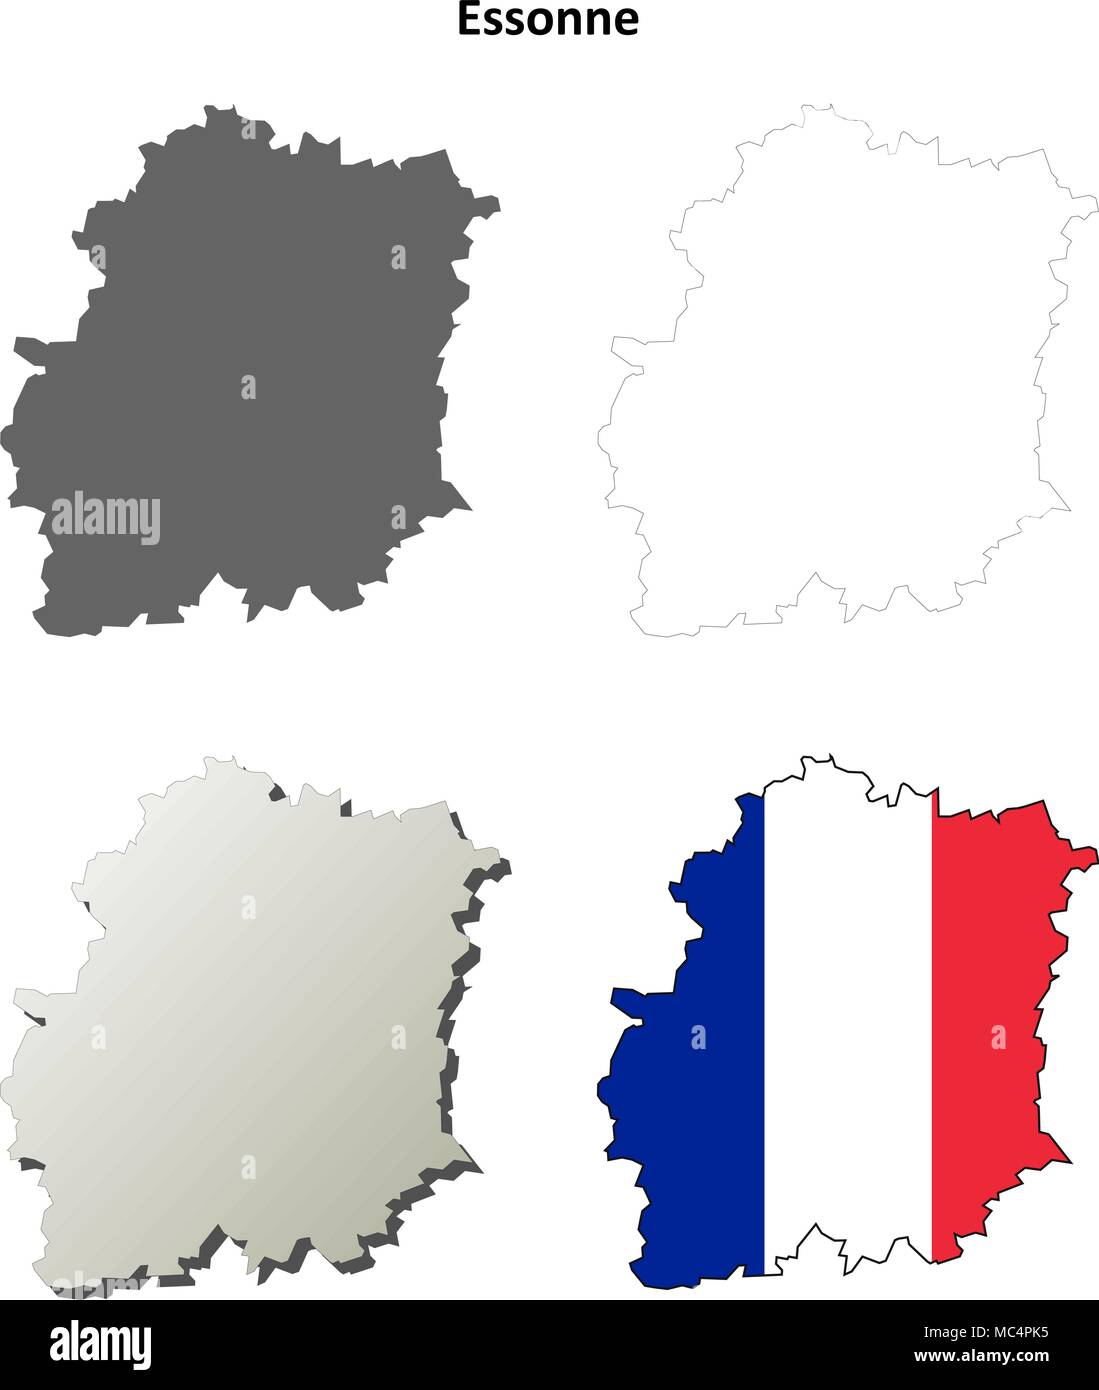 Essonne, Ile-de-France outline map set Stock Vector